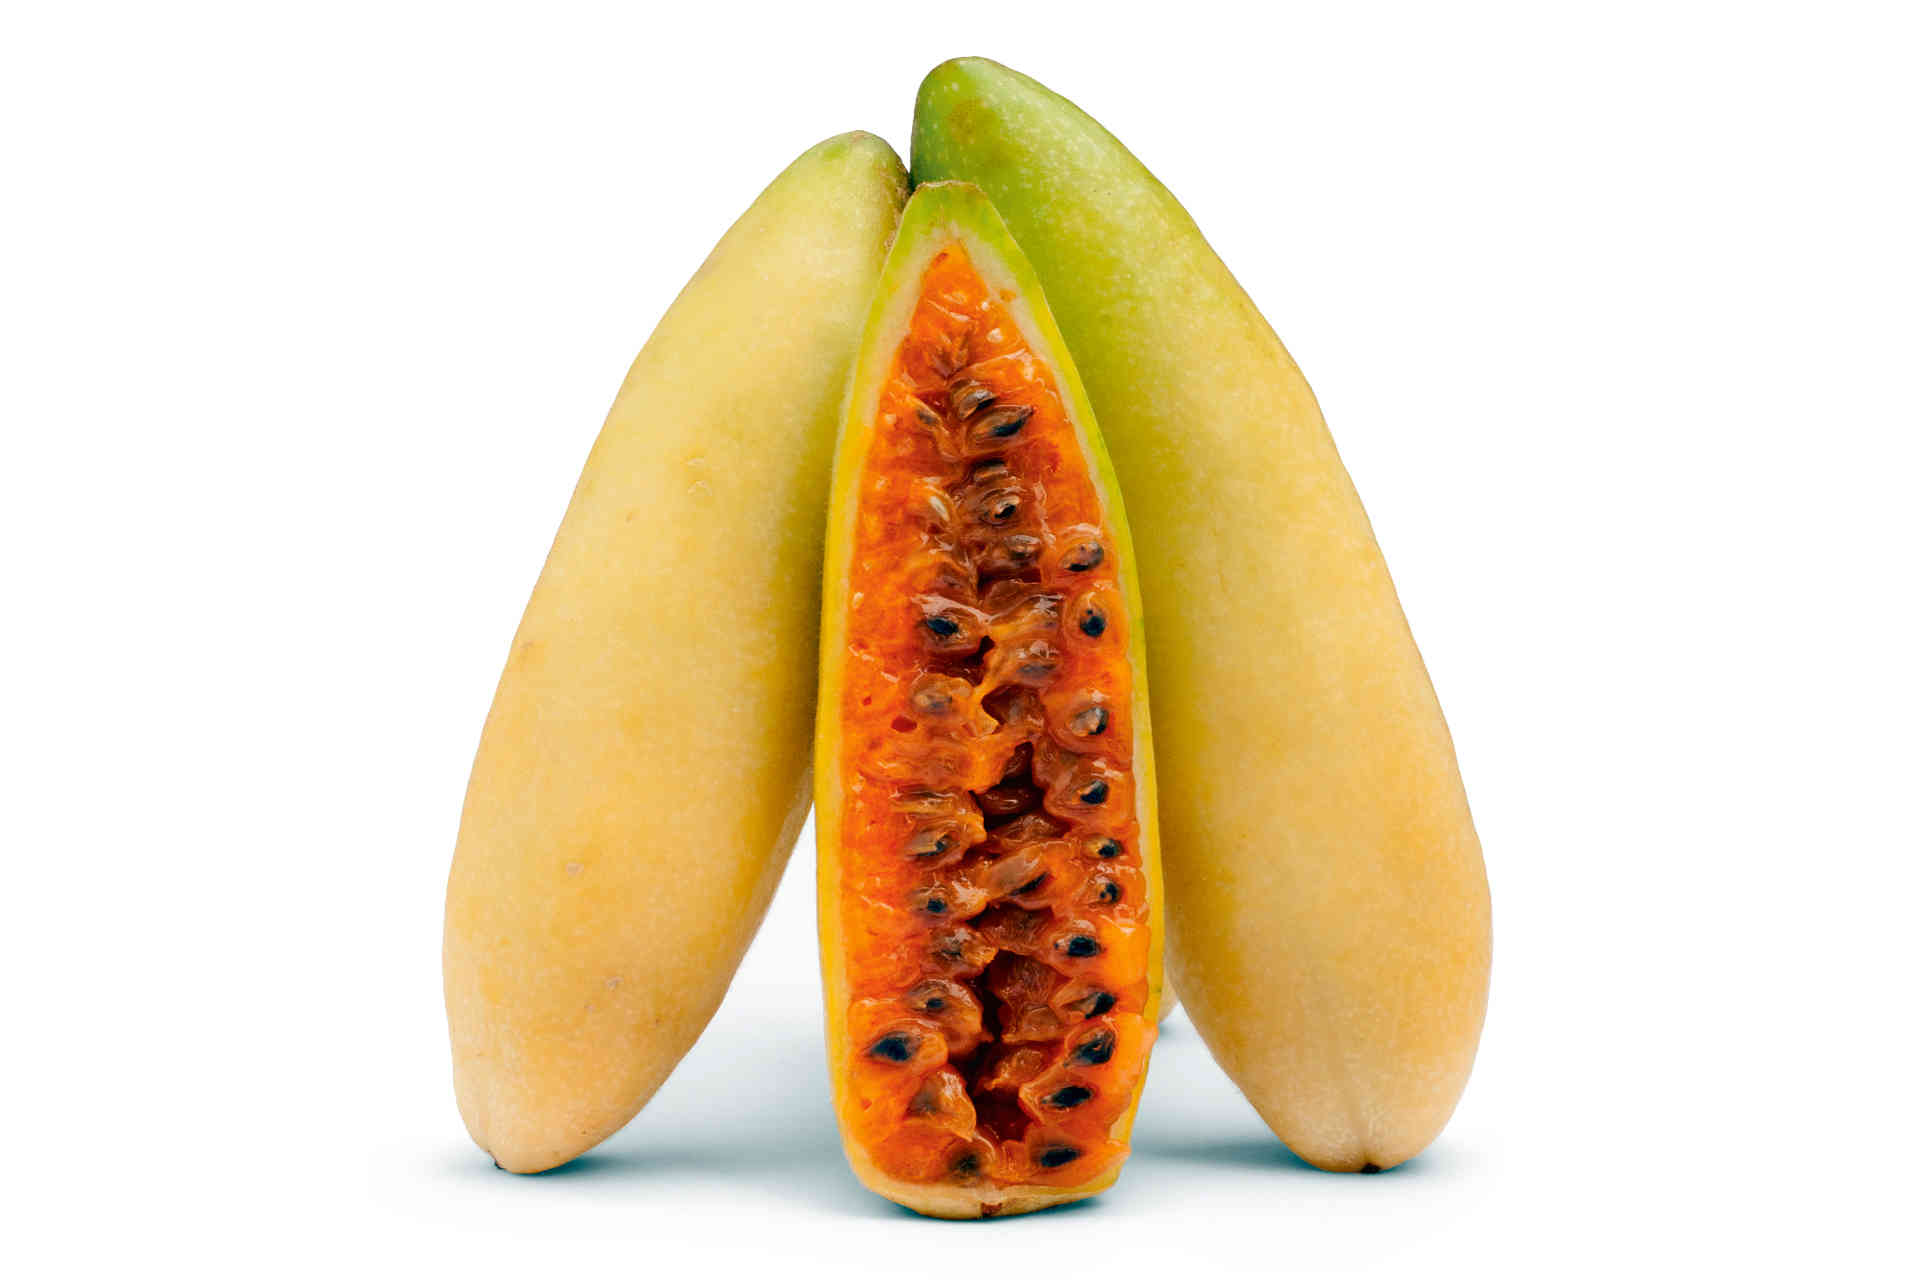 Das geleeartige, gelb bis orangegelbe Fruchtfleisch im Inneren der Frucht. © Shutterstock